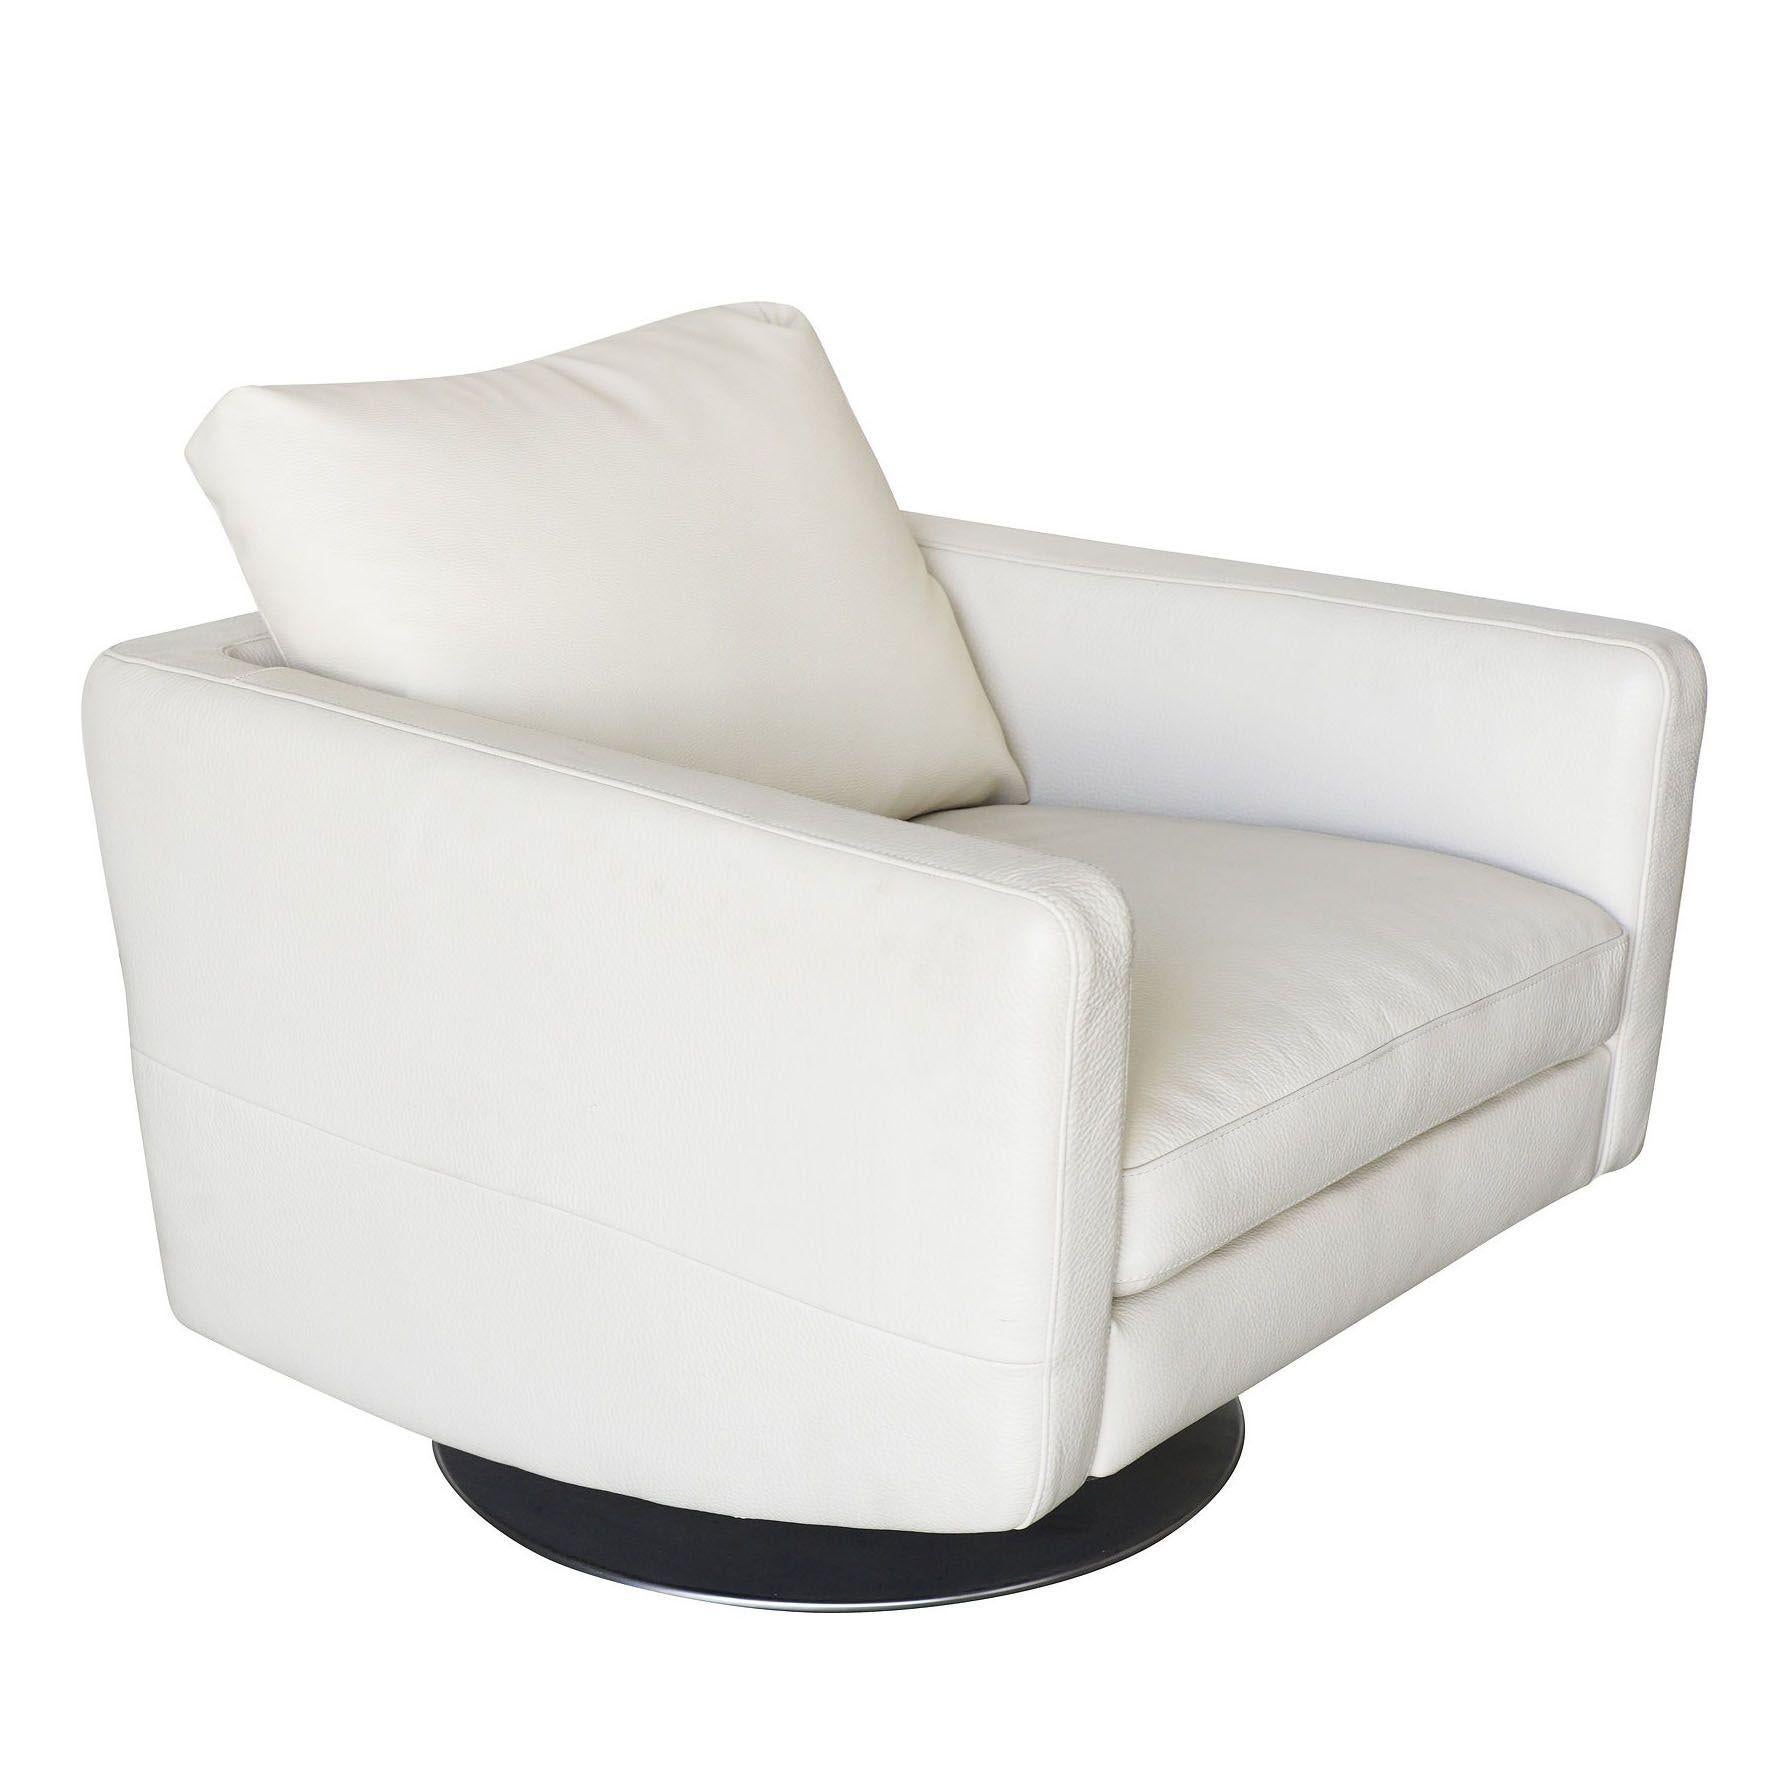 Chaise longue pivotante blanche moderniste avec base en acier brossé et revêtements en vinyle lourd de Permaguard.

Avalable : Deux.